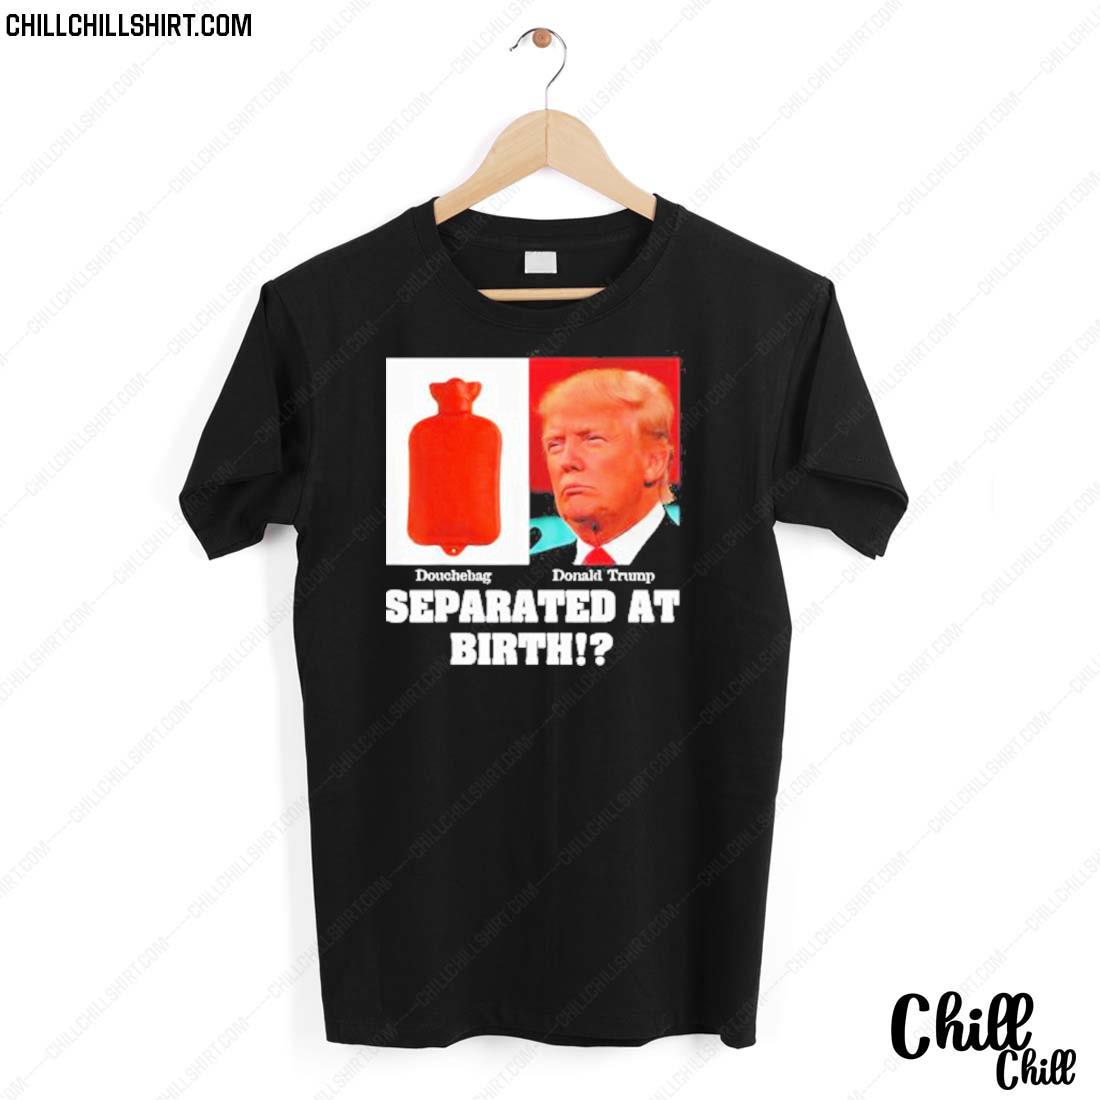 Official douchebag Donald Trump Separated At Birth Shirt